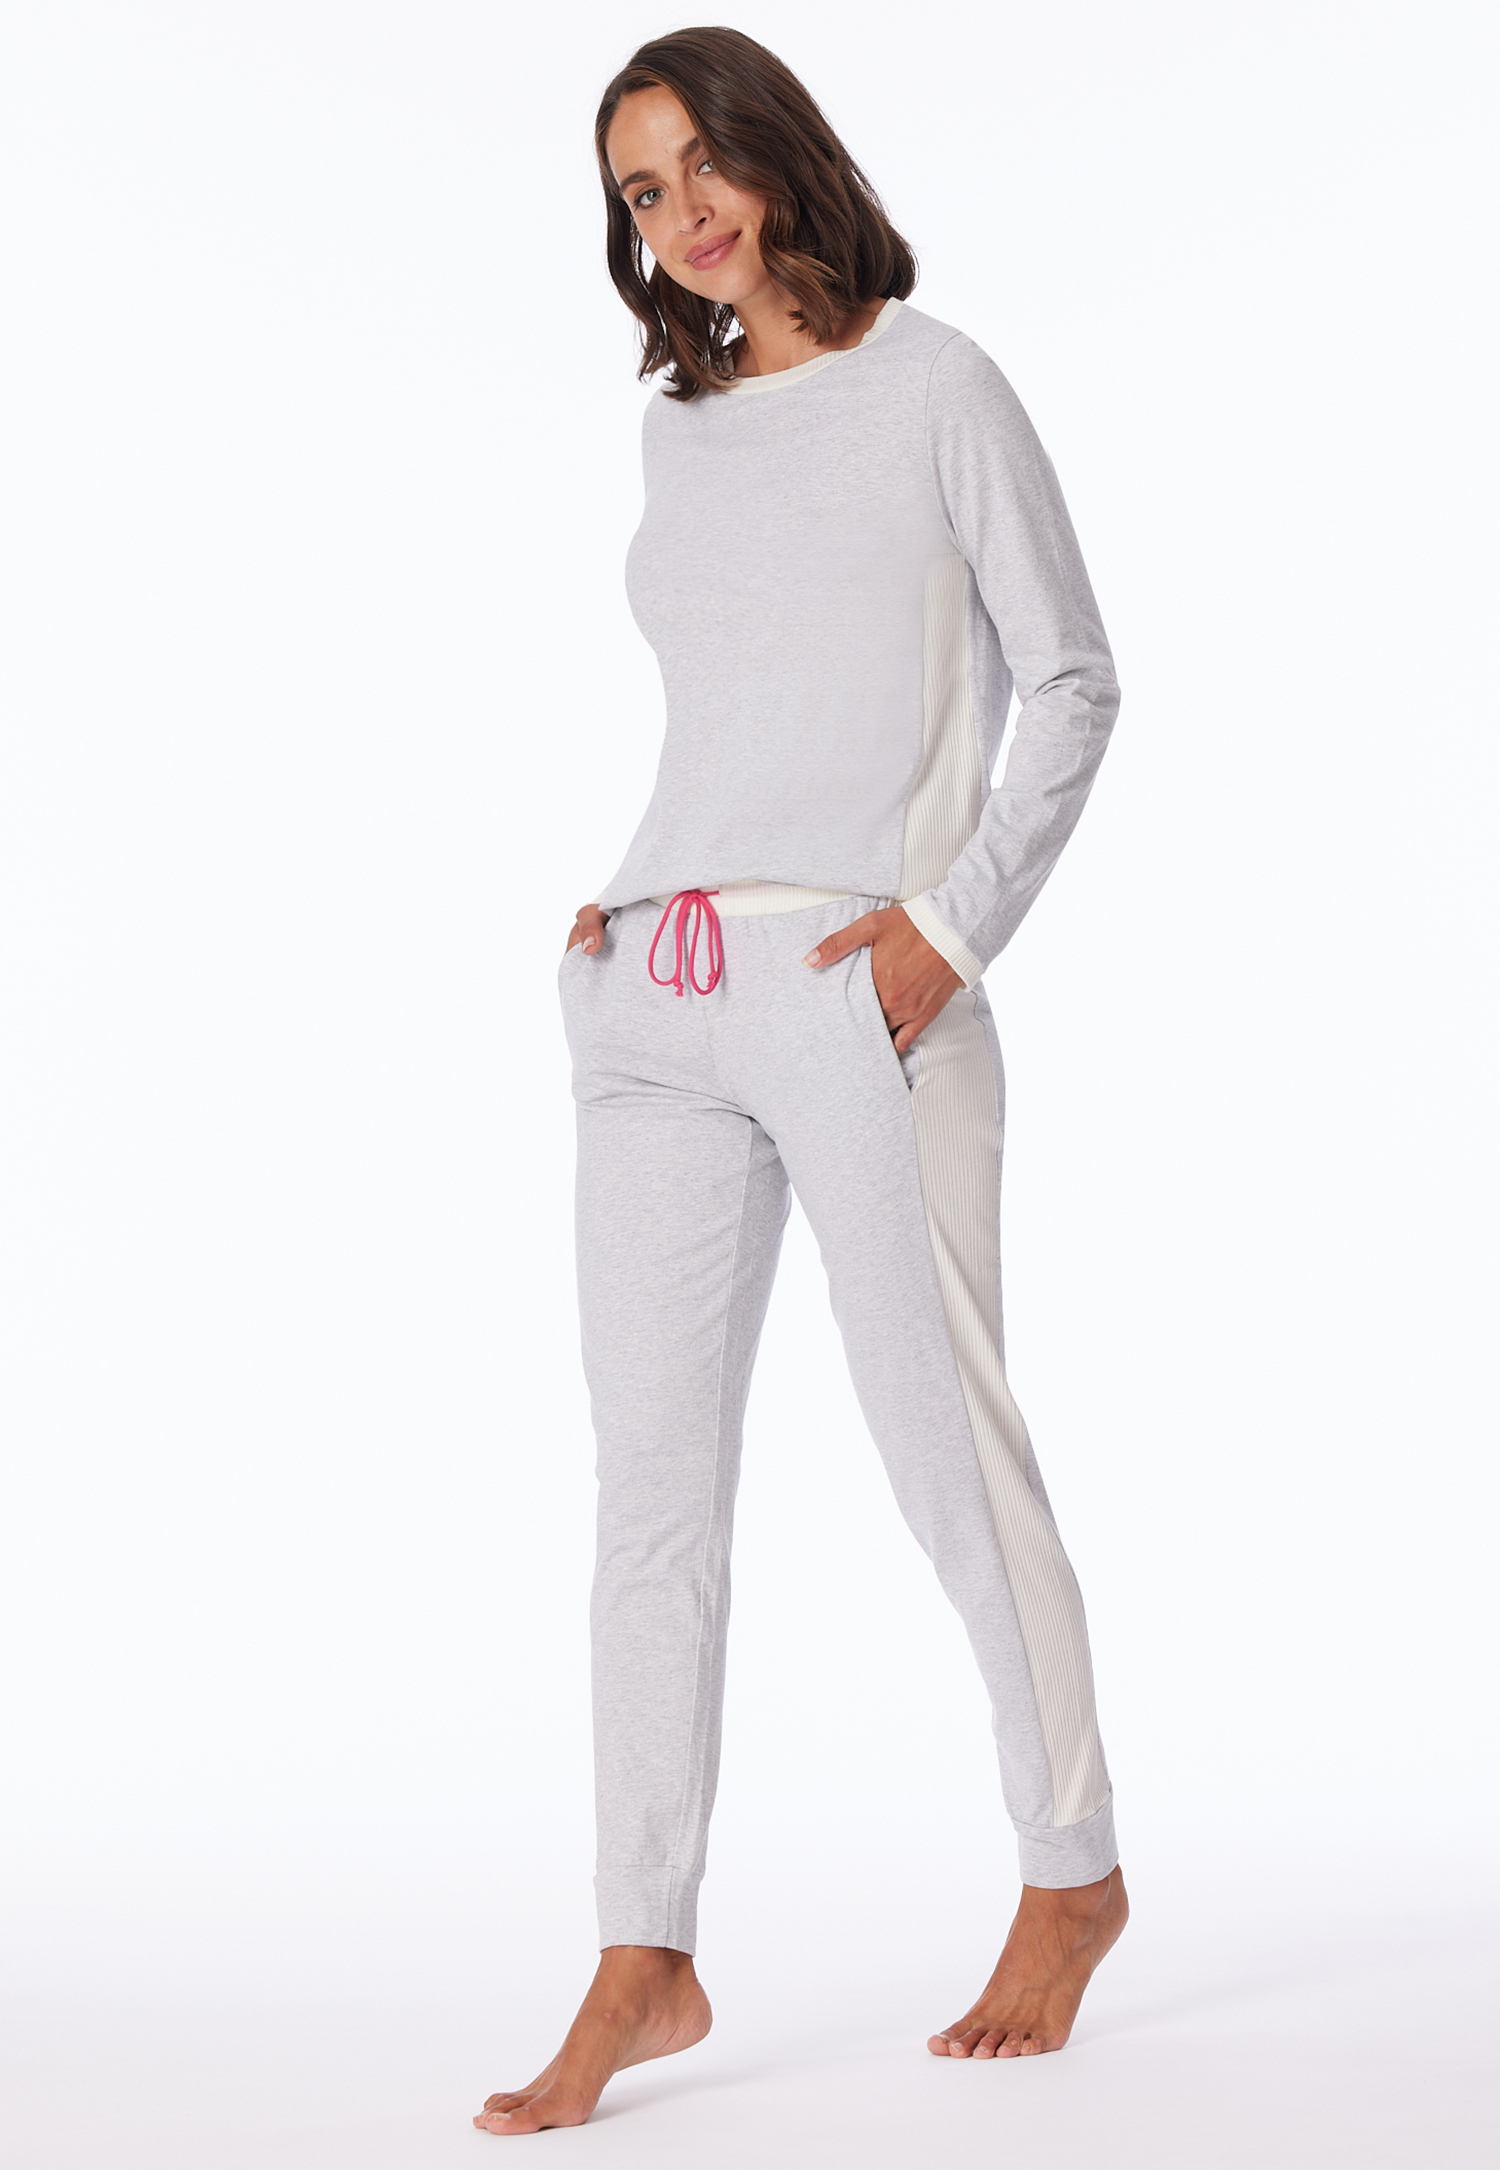 Schlafanzug lang Bio-Baumwolle grau-meliert - Casual Nightwear 48 von Schiesser